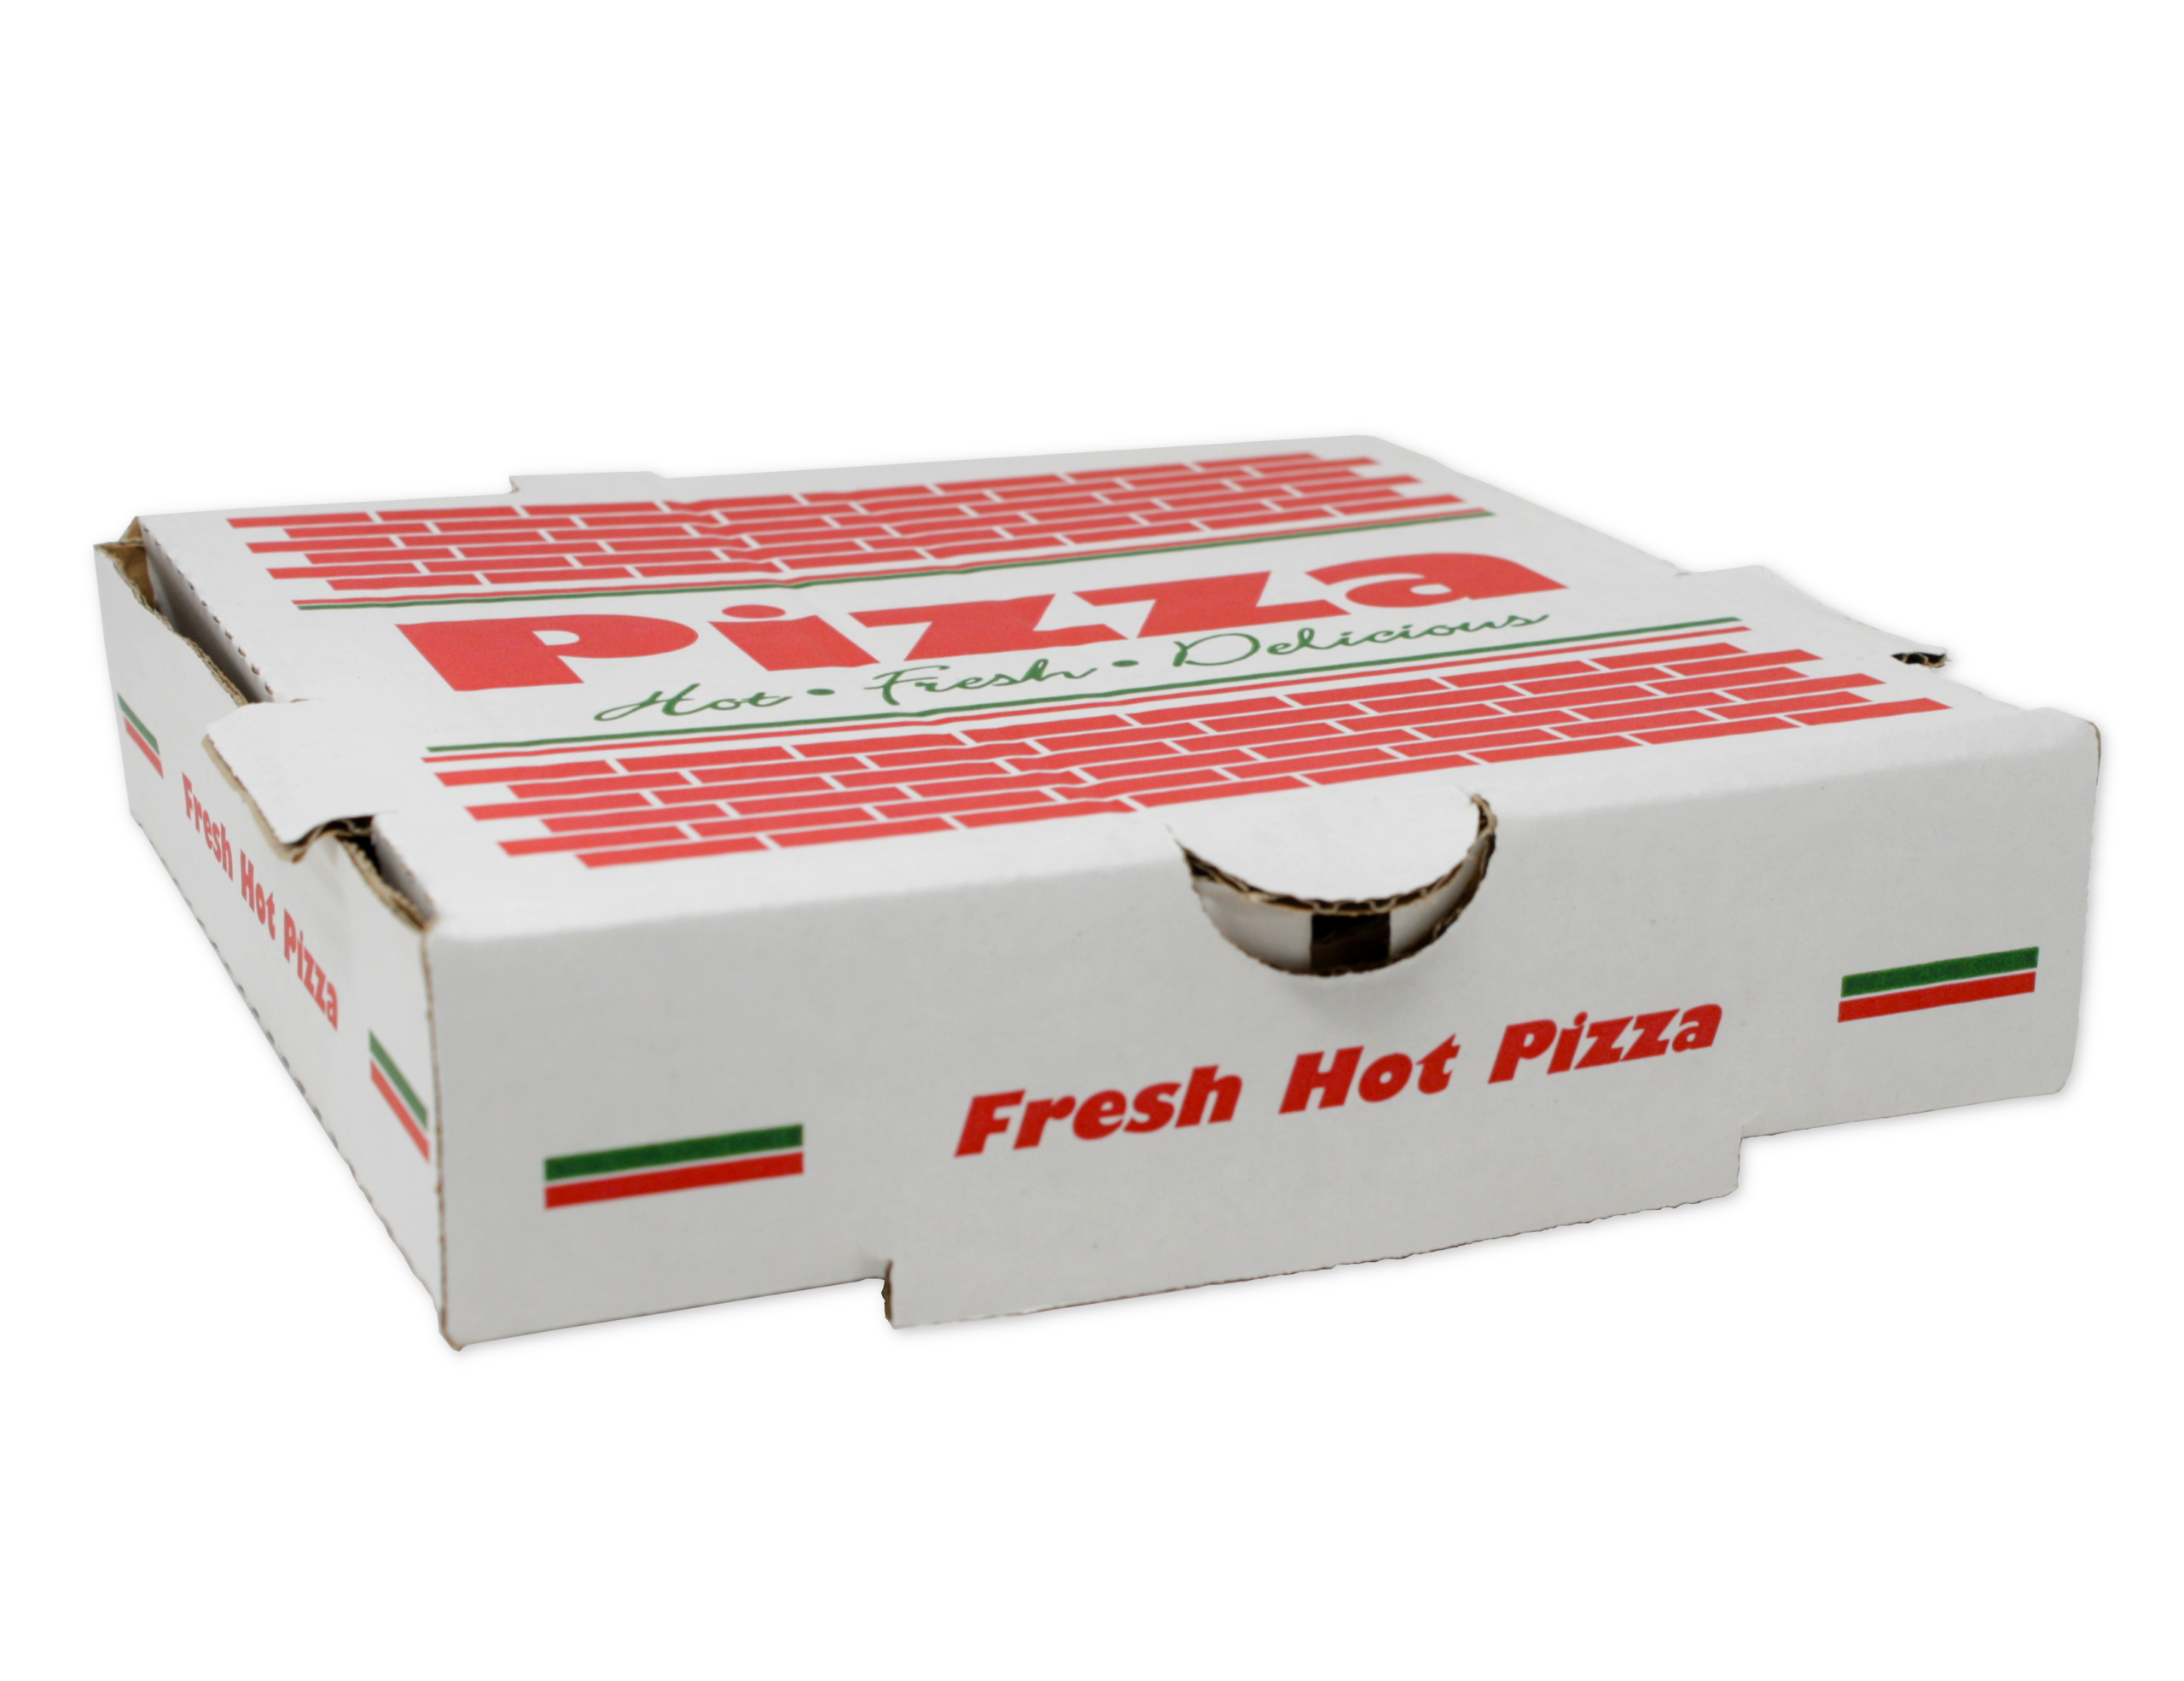 Caja de Pizza Genérica 8"x8"x2" Jocla Panama